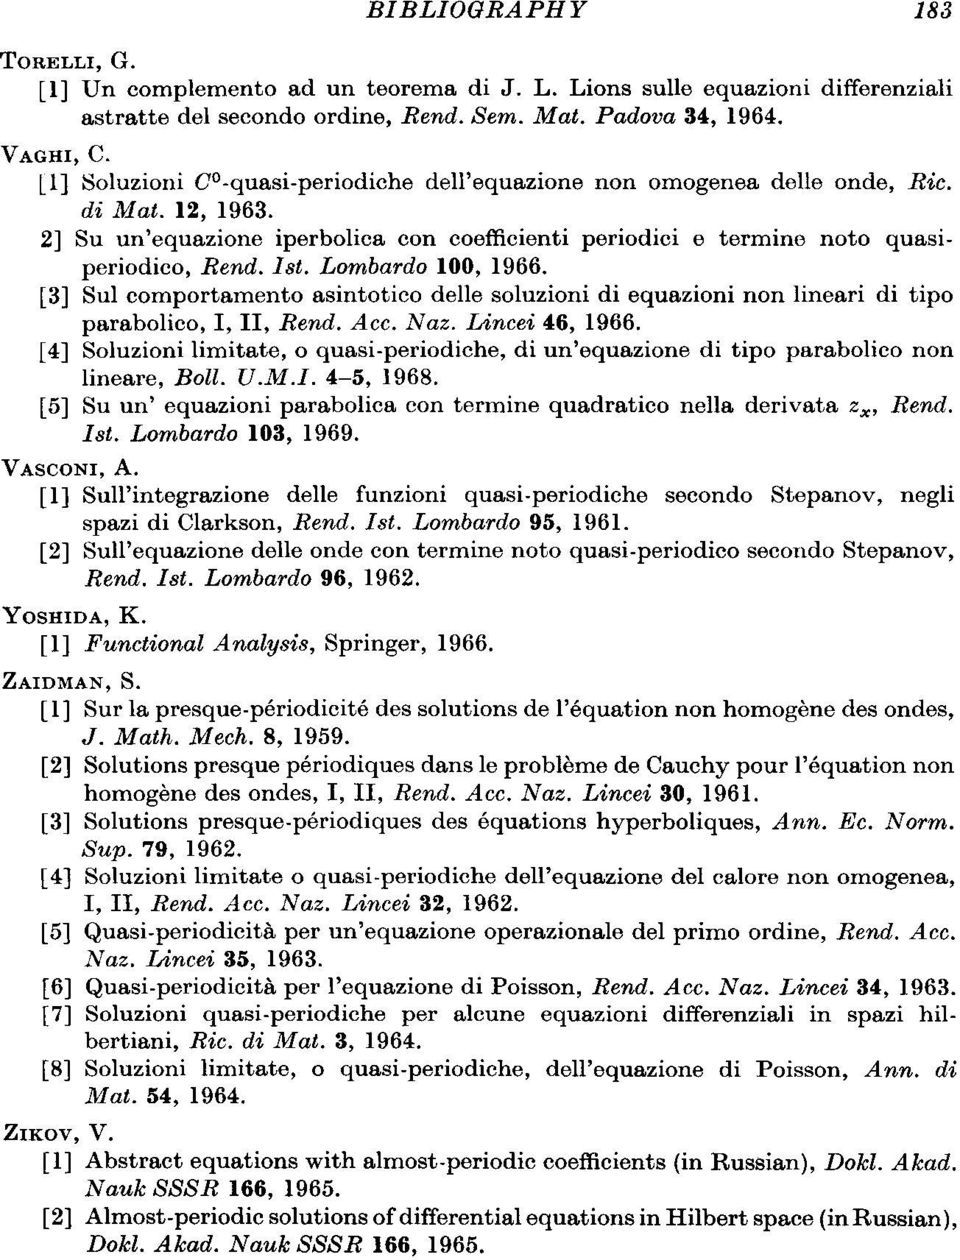 [3] Sui comportamento asintotico delle soluzioni di equazioni non lineari di tipo parabolico, I, II, Rend. Ace. Naz. Lineei 46, 1966.